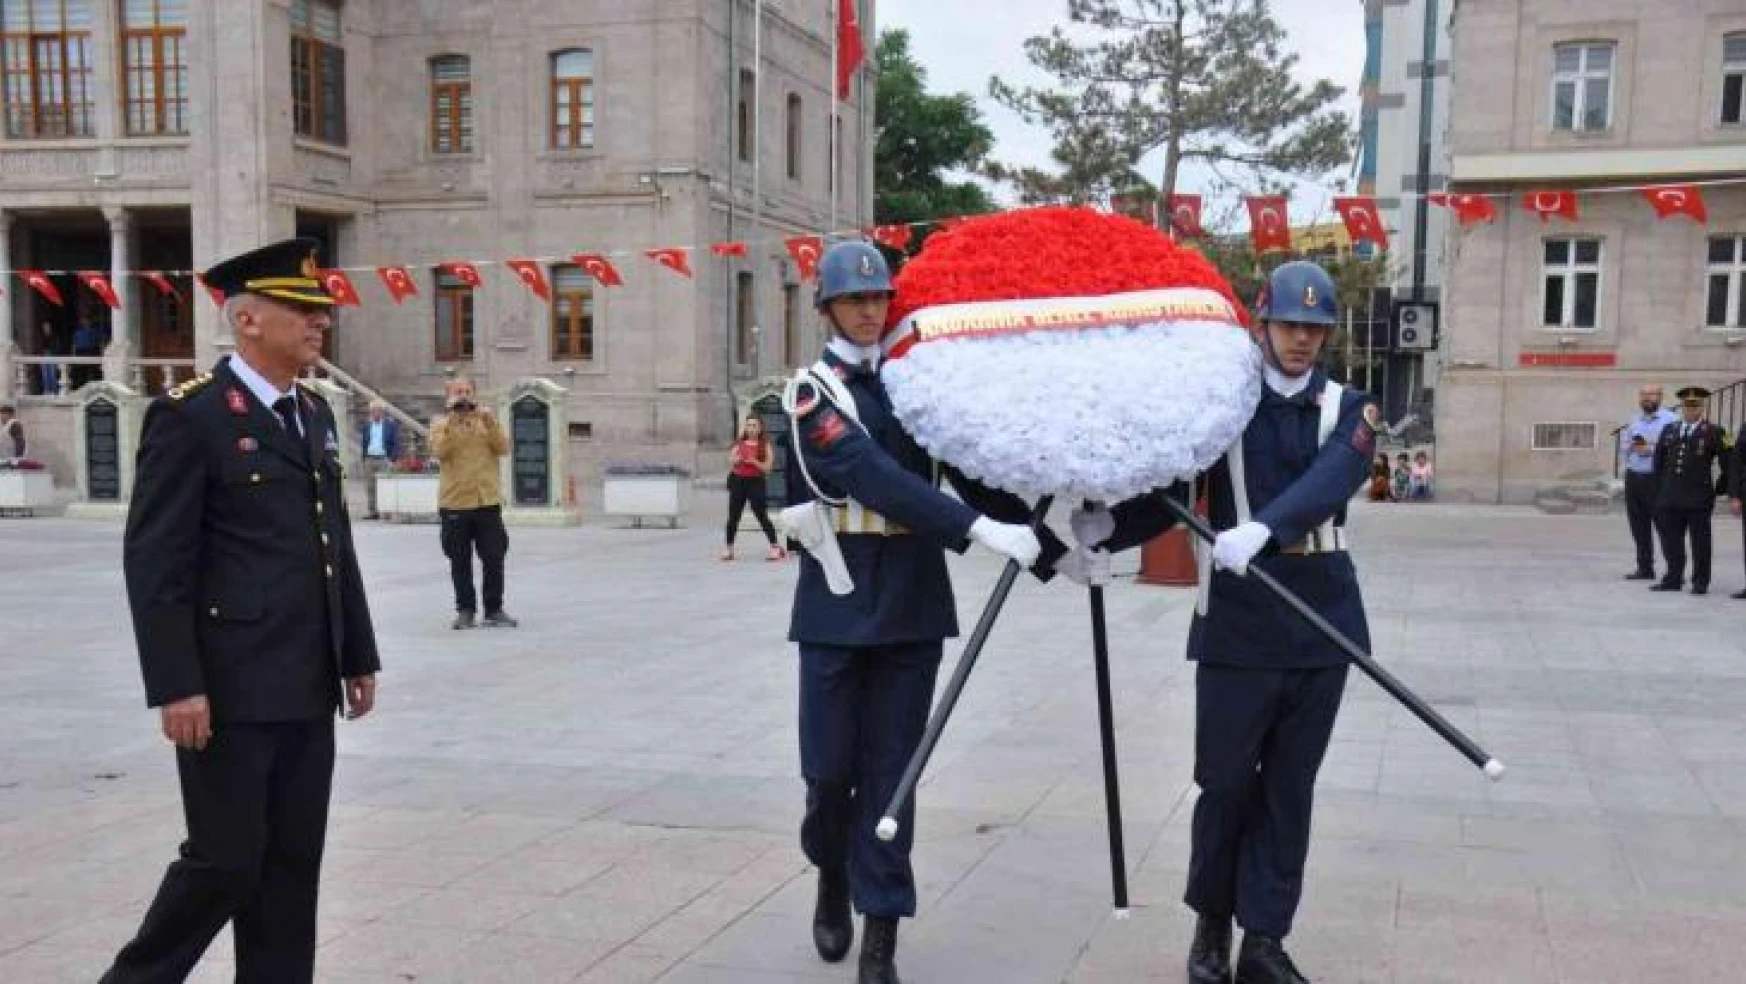 Aksaray'da Jandarma Teşkilatının 183. yılı kutlanıyor